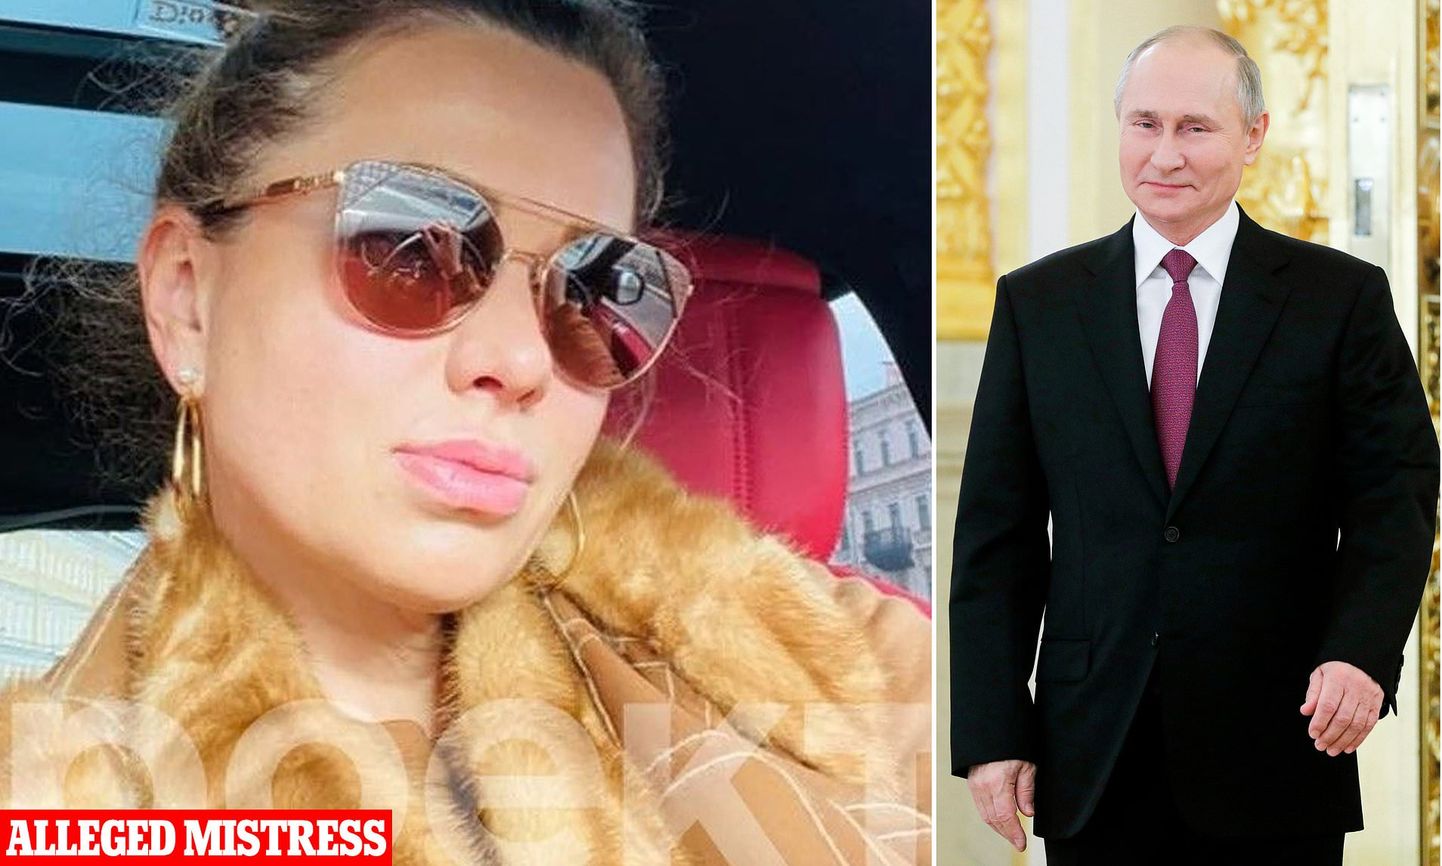 PEIDETUD VARA: Levivad kuuldused, et Svetlana Krivonogihh oli kunagi president Putini armuke ja sünnitas talle 2003. aastal tütre. Praegu omab naine kinnisvara nii Lõuna-Prantsusmaal kui ka Peterburis.